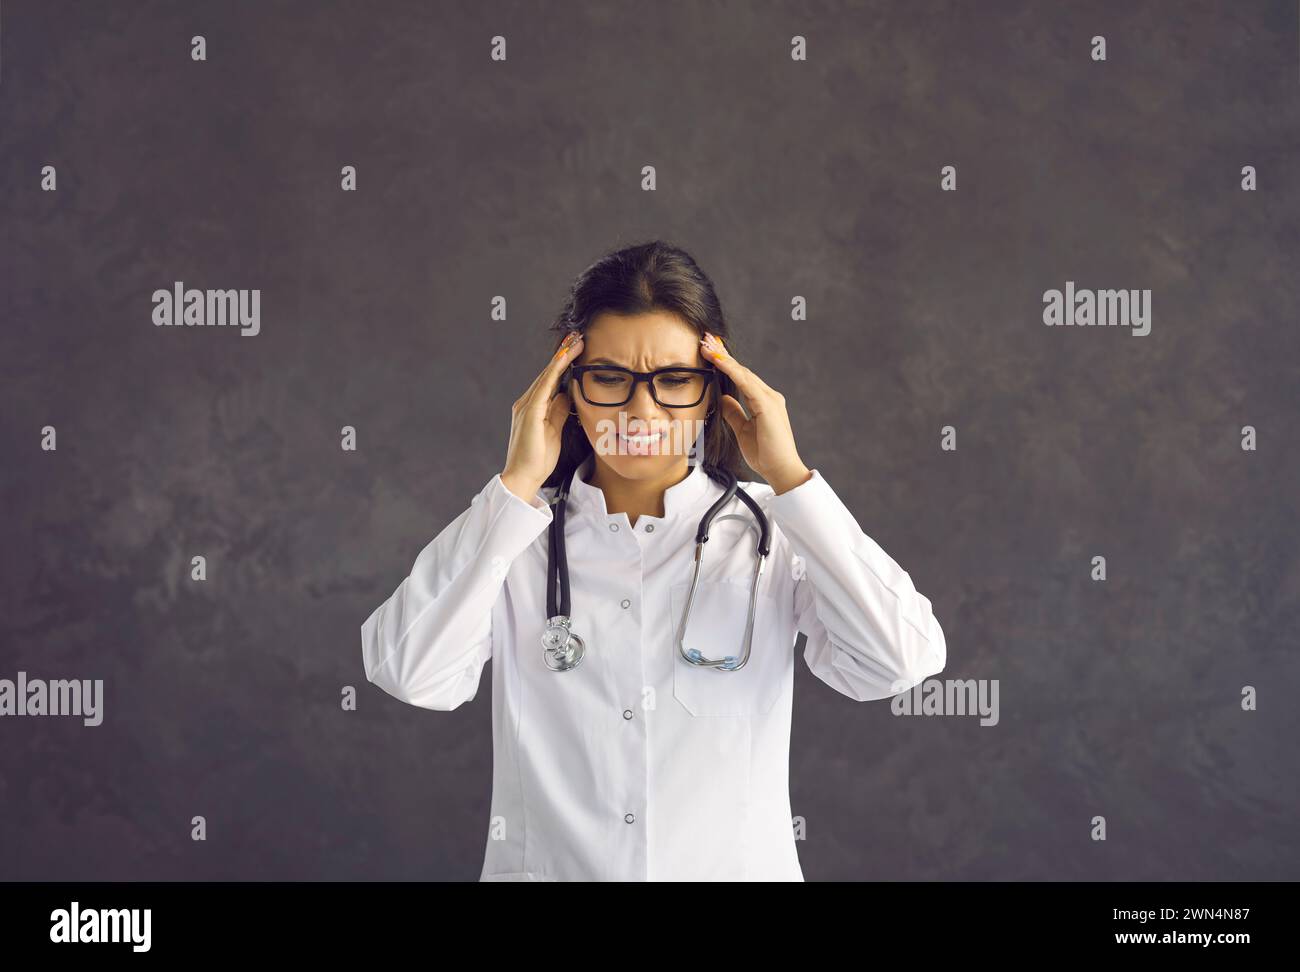 Porträt einer müden Ärztin, die ihre Schläfen massiert und Kopfschmerzen nach einem harten Arbeitstag spürt. Stockfoto